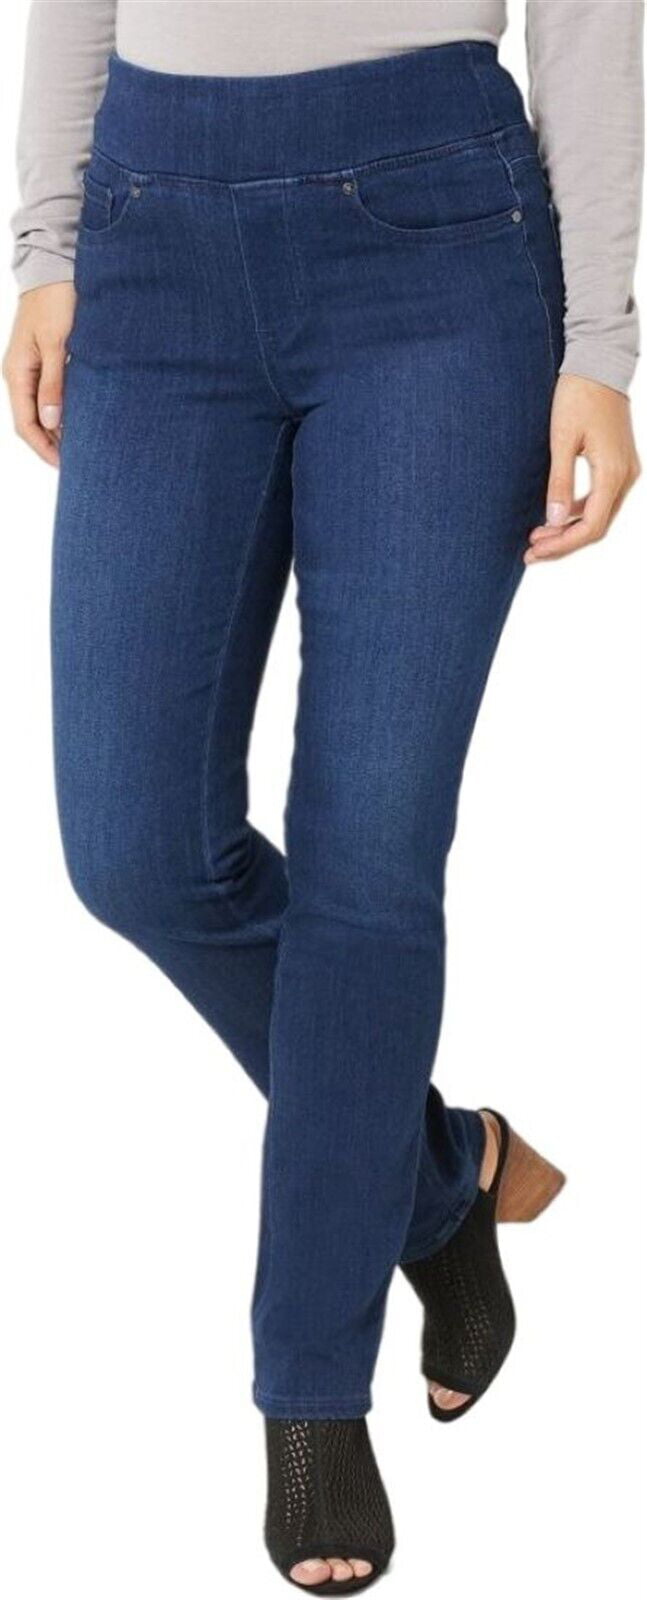 Belle Kim Gravel Primabelle Pull-On Jeans Women's A461684 - Walmart.com